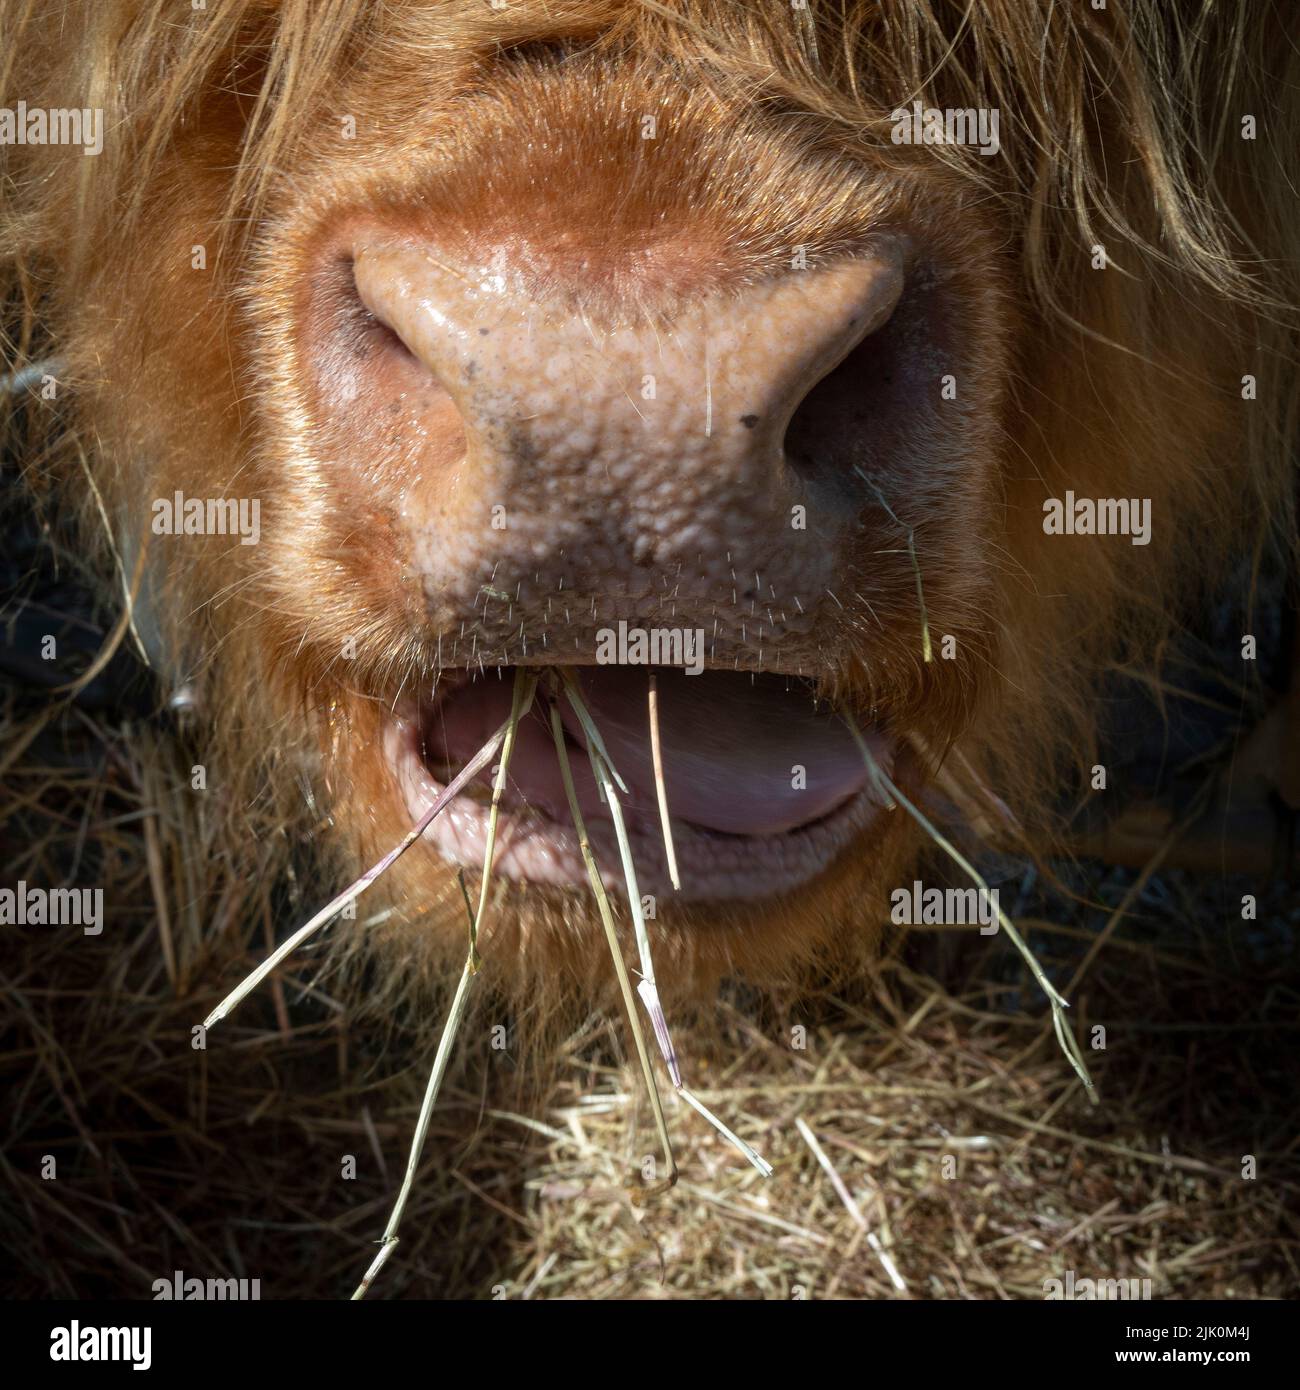 Primer plano de la nariz y boca de vaca parda, comiendo paja Foto de stock